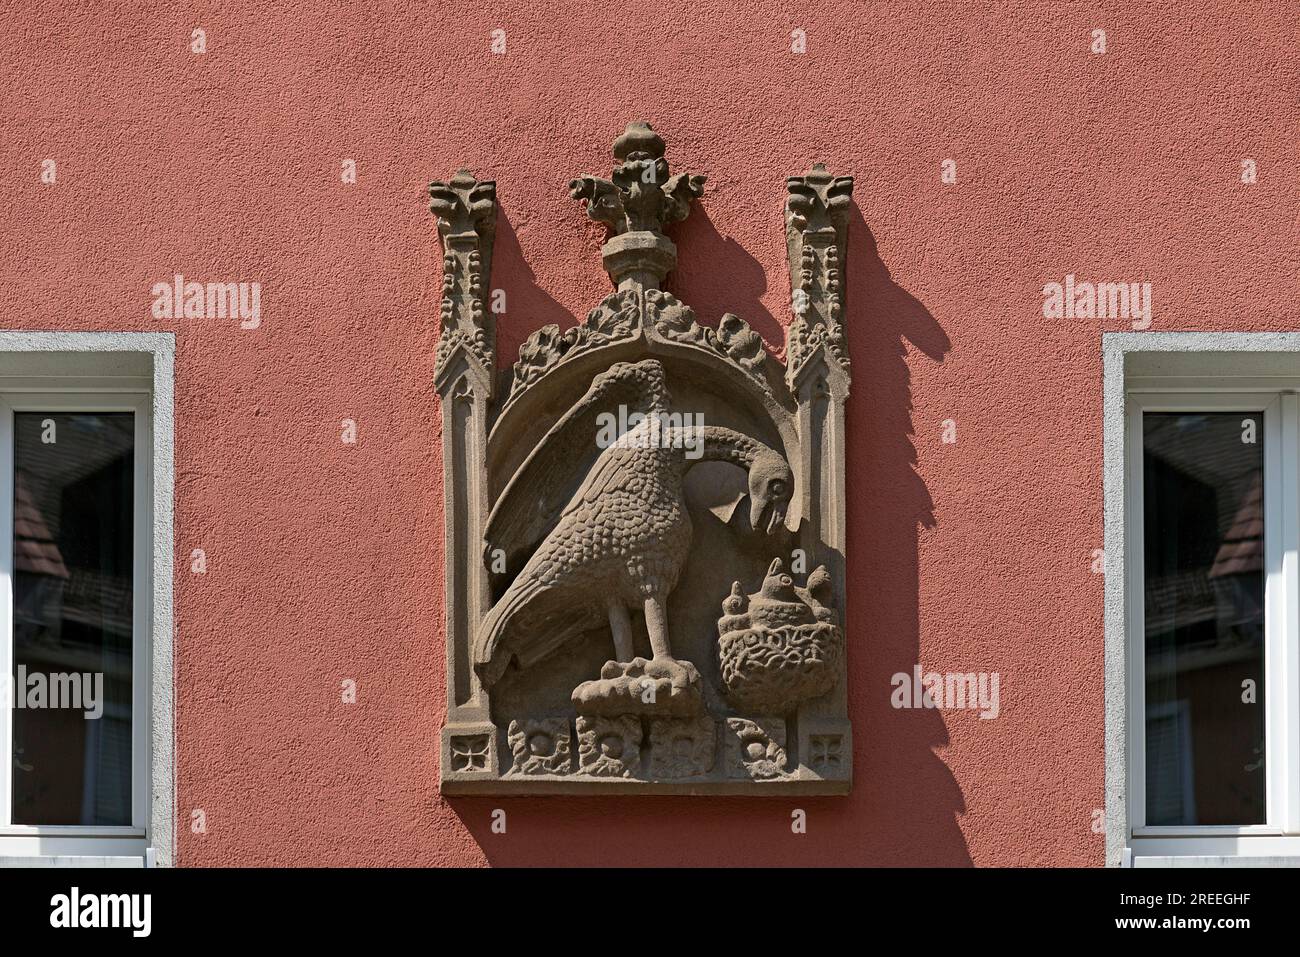 Hausschild, Relief, Adler füttert seine Jungen im Nest, Bergstr. 13 ud 15, Nürnberg, Mittelfrankreich, Bayern, Deutschland Stockfoto